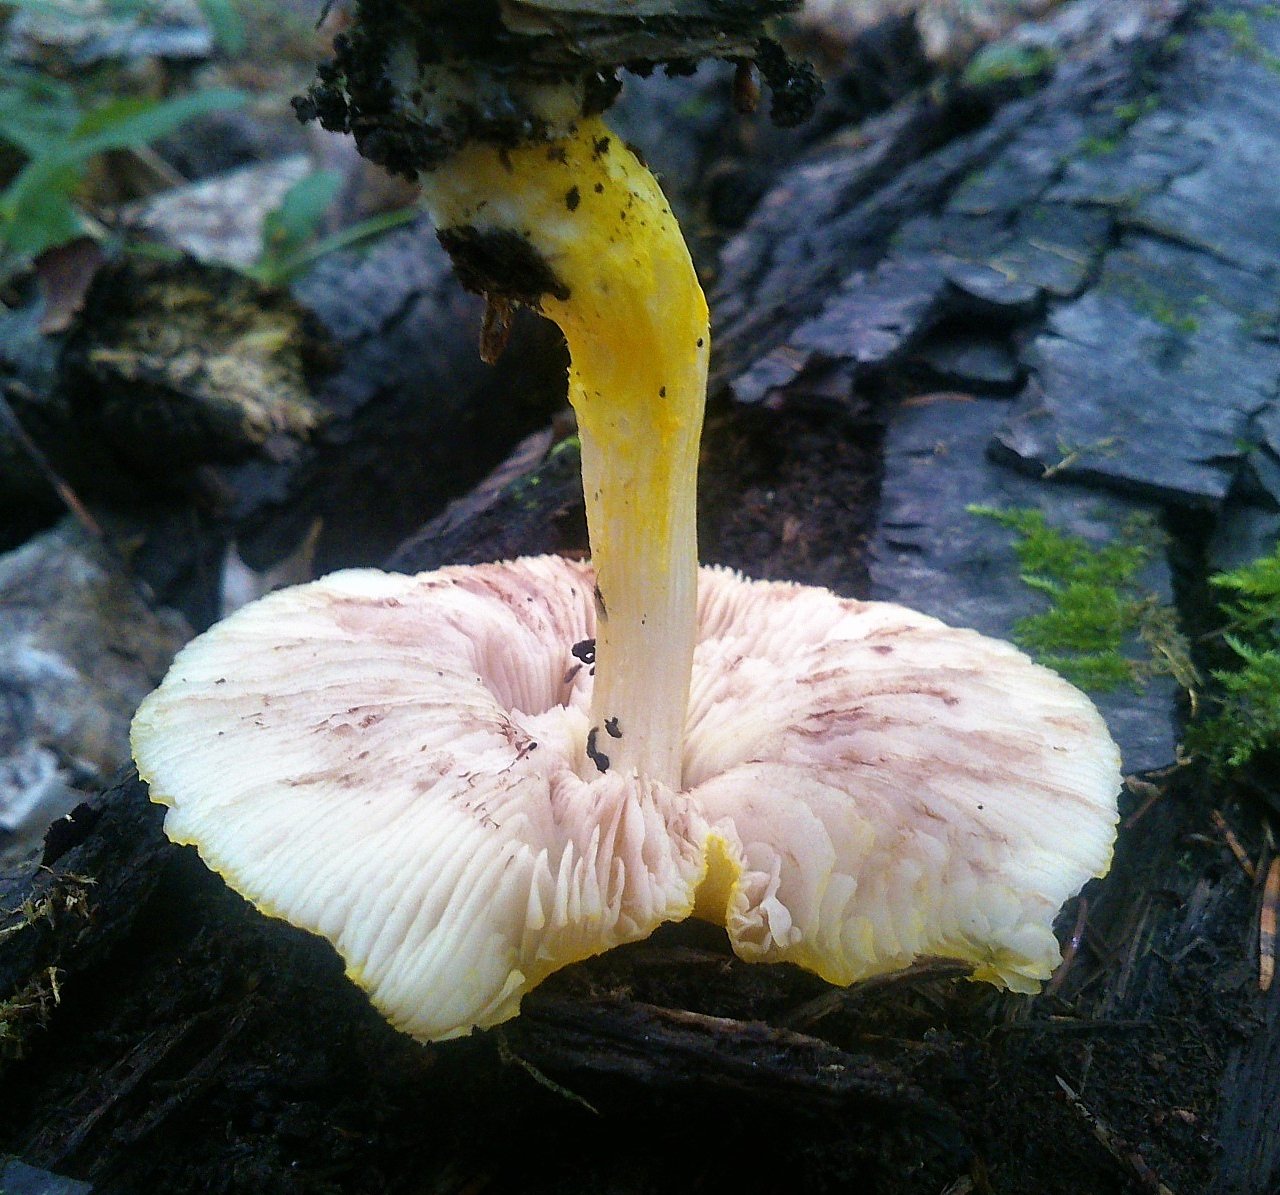 Плютей грязноножковый (pluteus podospileus) – грибы сибири